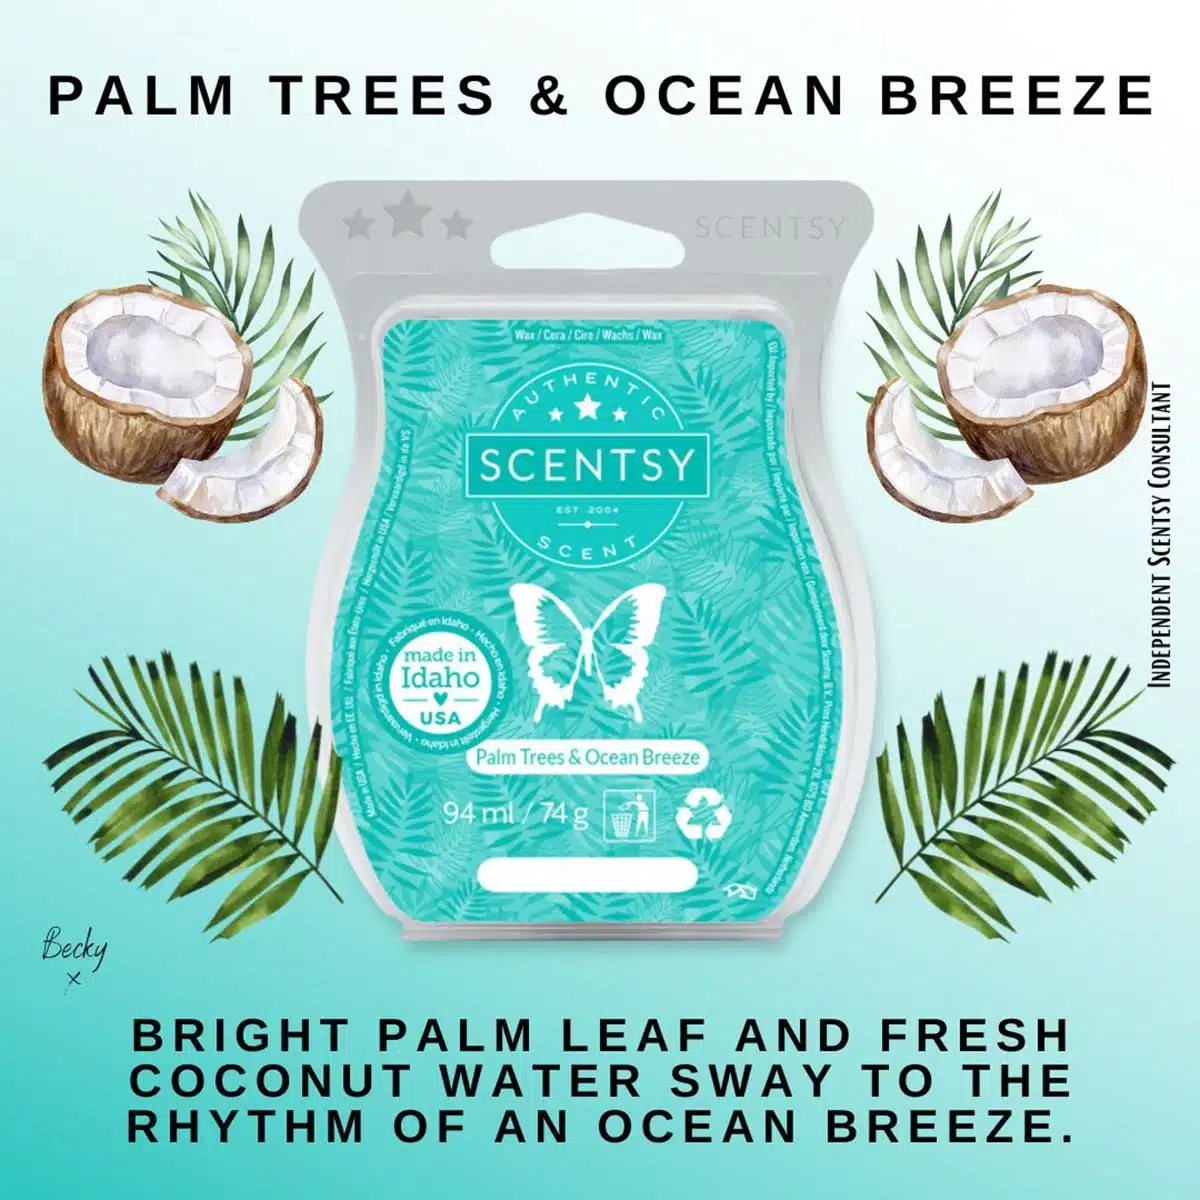 Bibi's Scentsy - Duft des Monats Mai - Palm Trees & Ocean Breeze 🌴 🥥🌺  Für das Urlaubsfeeling zu Hause ☺️😍 #Scentsy #Ochsenfurt #DuftdesMonats  #PalmTrees #OceanBreeze